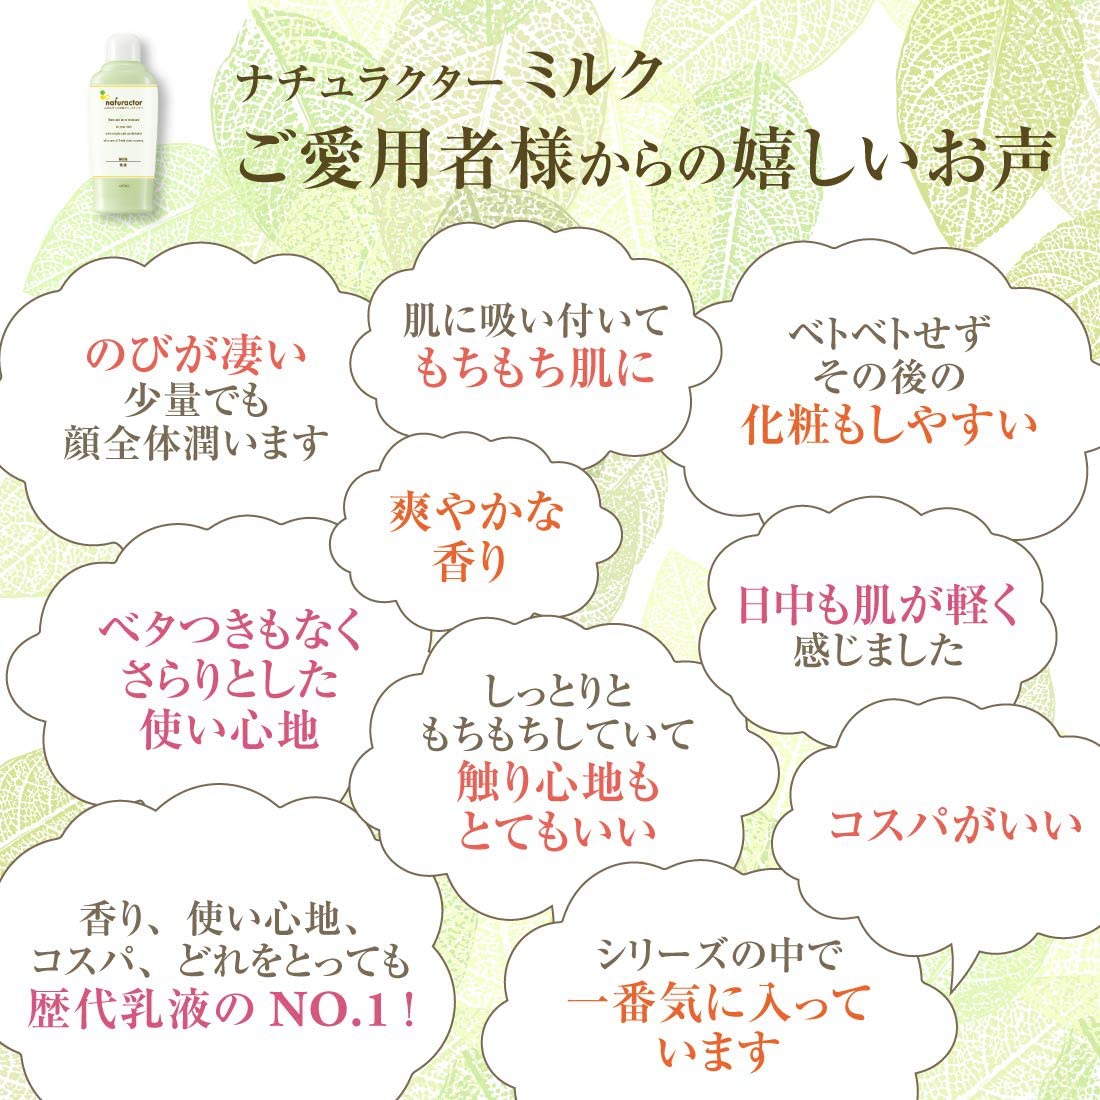 メイコー化粧品(MEIKO) ナチュラクター ミルクの商品画像6 